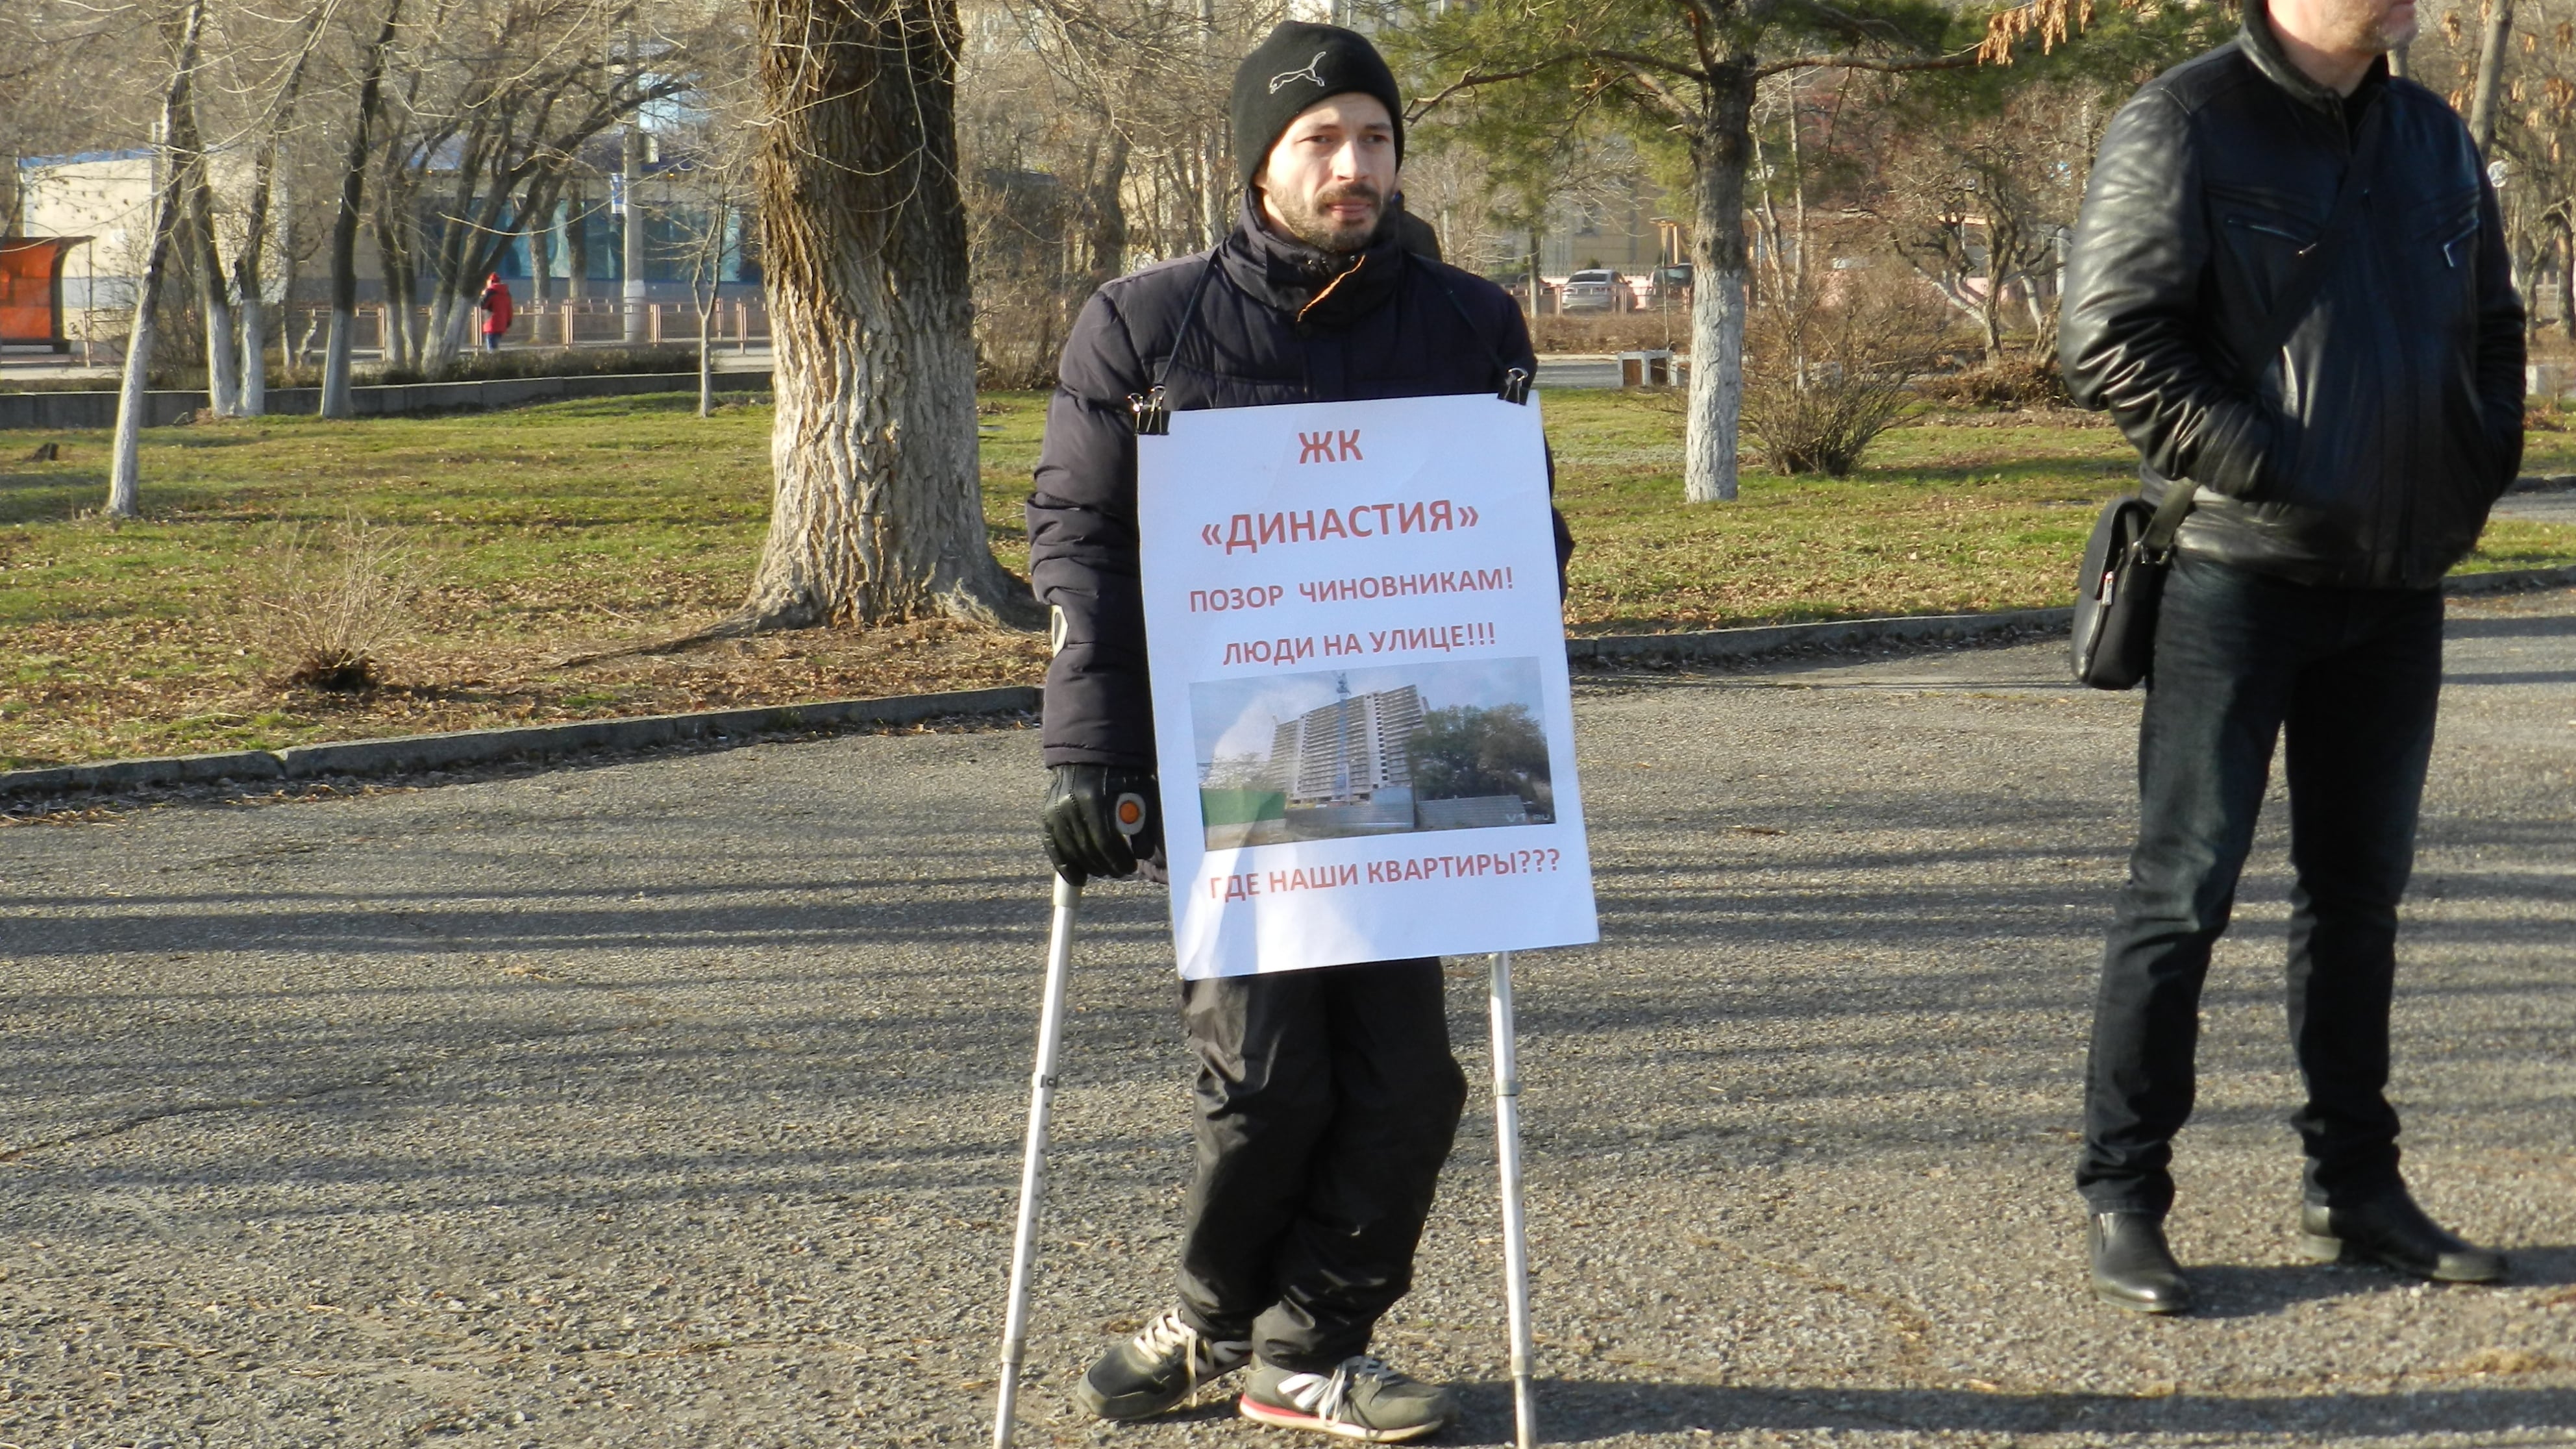 Участник митинга обманутых дольщиков в Волгограде 21 декабря 2019 года. Фото Татьяны Филимоновой для "Кавказского узла"